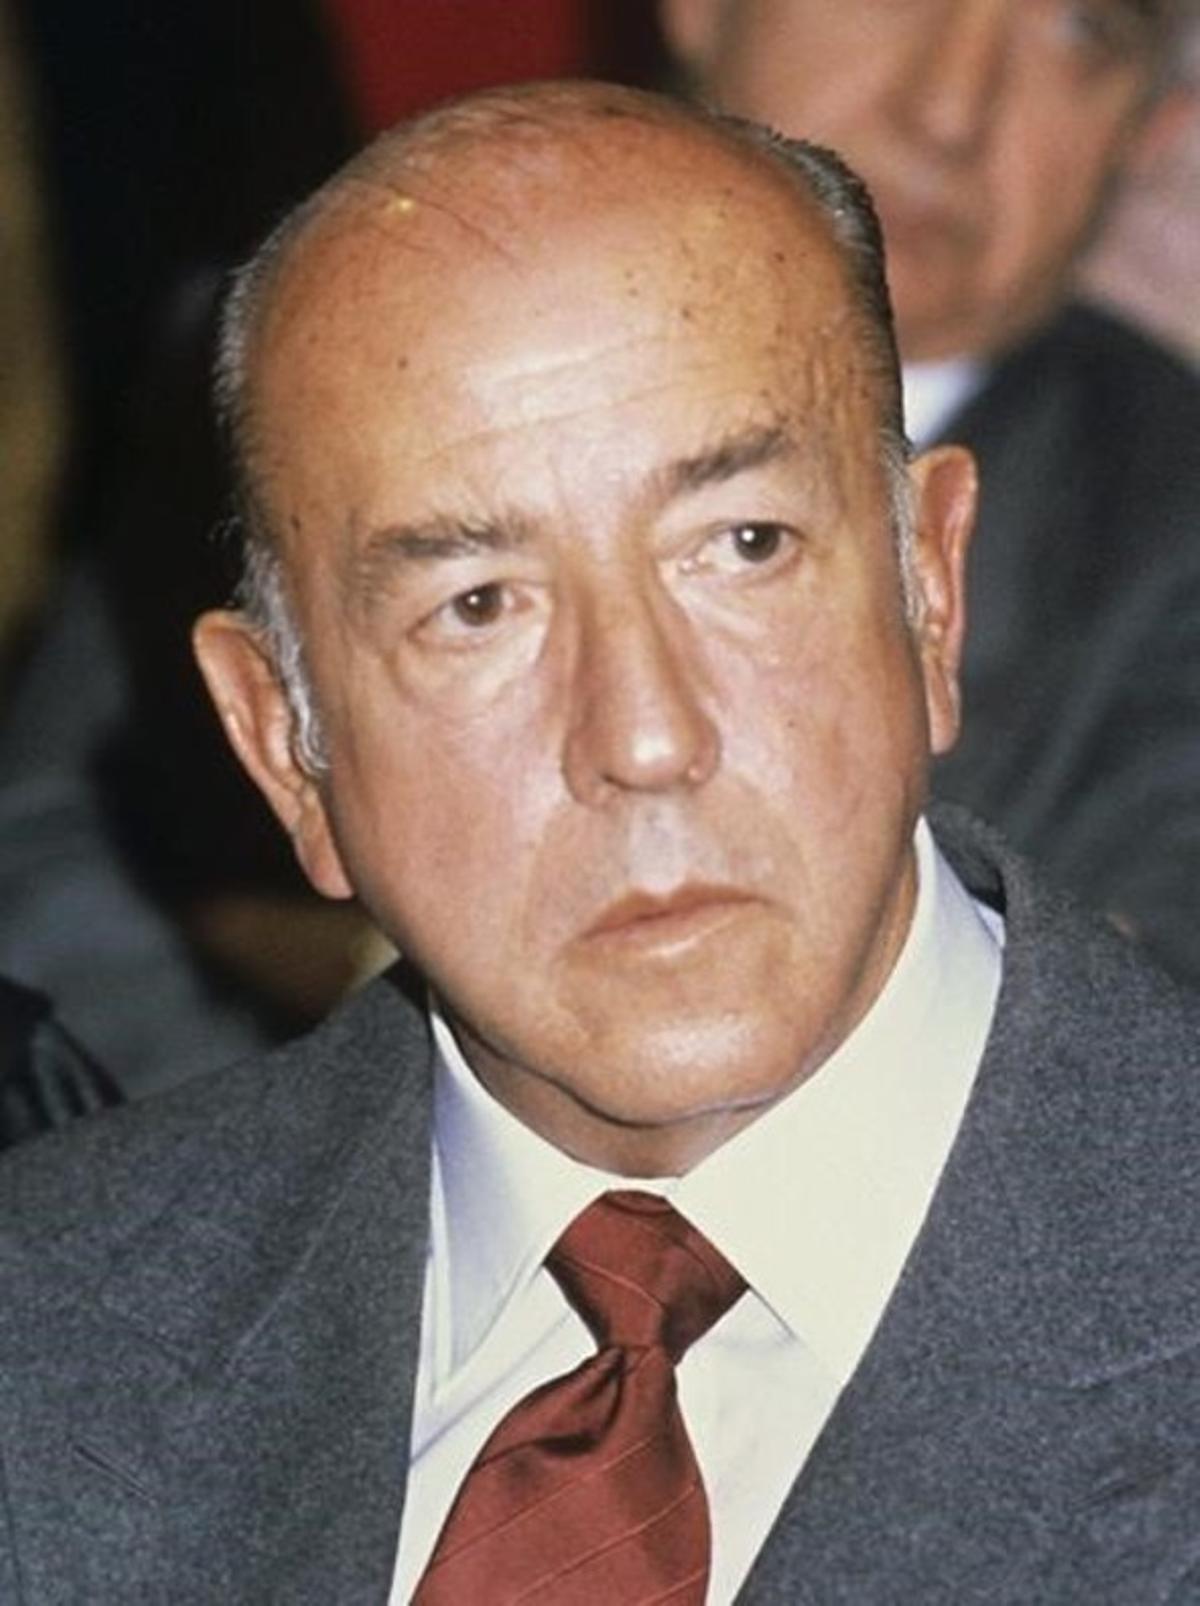 El exministro franquista José Utrera Molina.